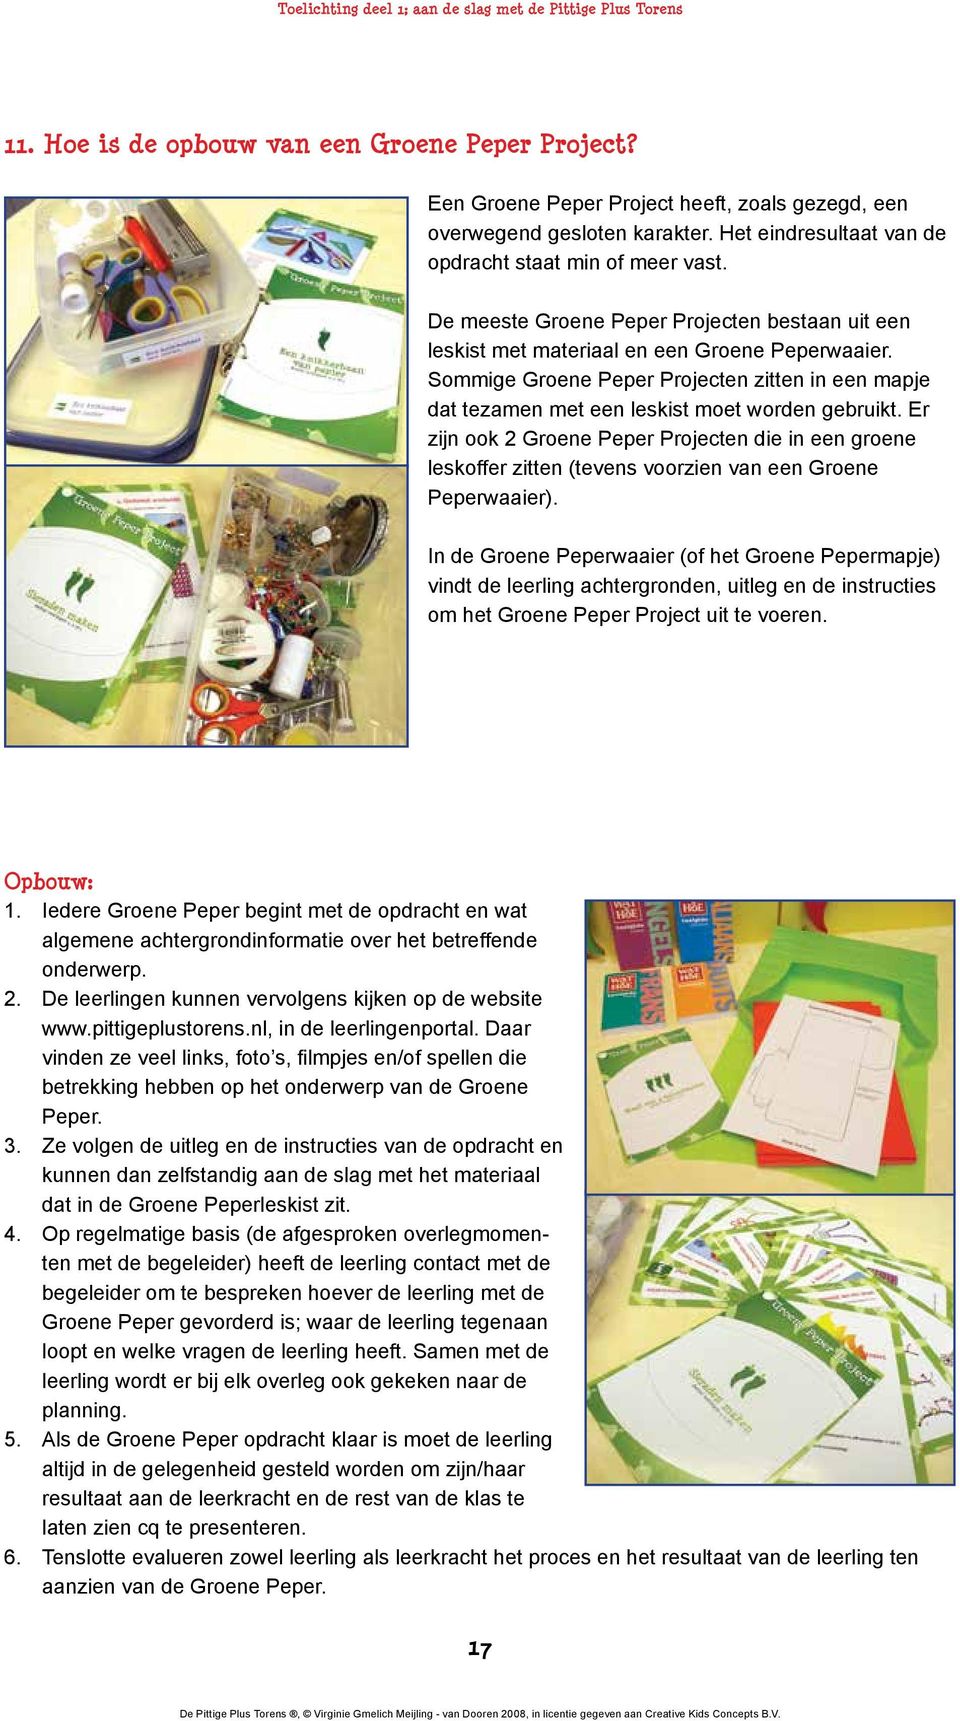 Er zijn ook 2 Groene Peper Projecten die in een groene leskoffer zitten (tevens voorzien van een Groene Peperwaaier).